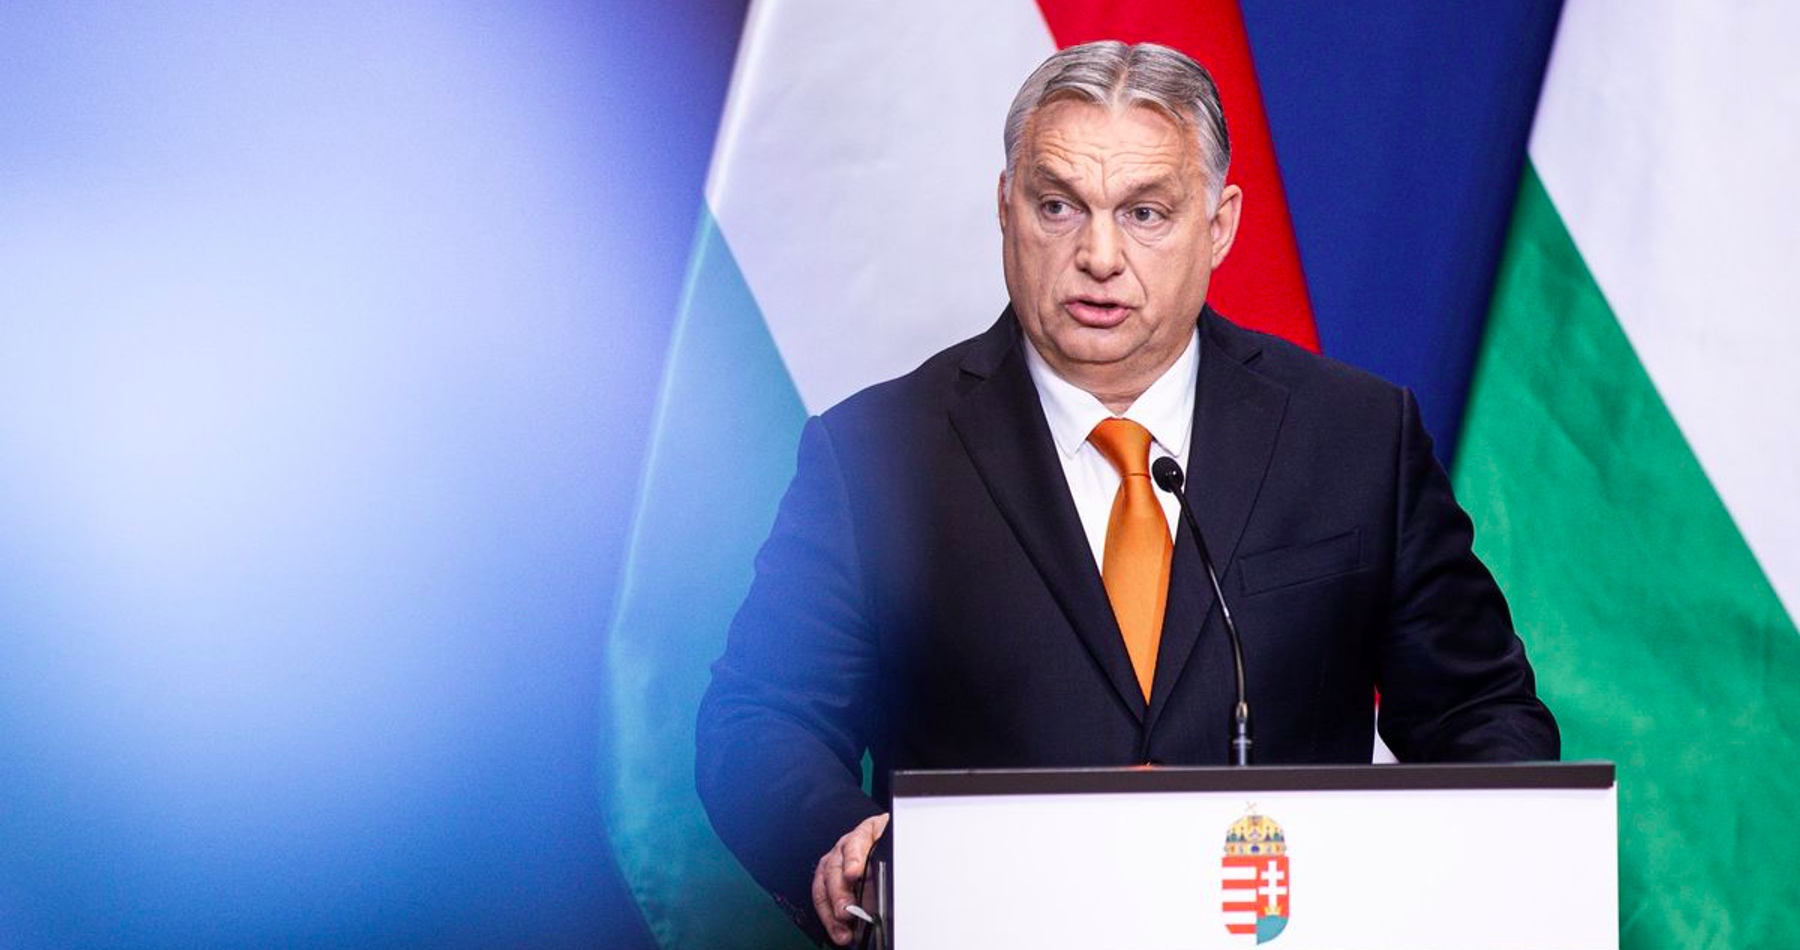 Orbán označil Nemeckom energetický balík podpory v hodnote 20-miliárd eur za kanibalizmus ohrozujúci jednotu EÚ. Riešenie energetickej krízy Scholzovou vládou kritizujú aj politici z iných členských štátov eurobloku